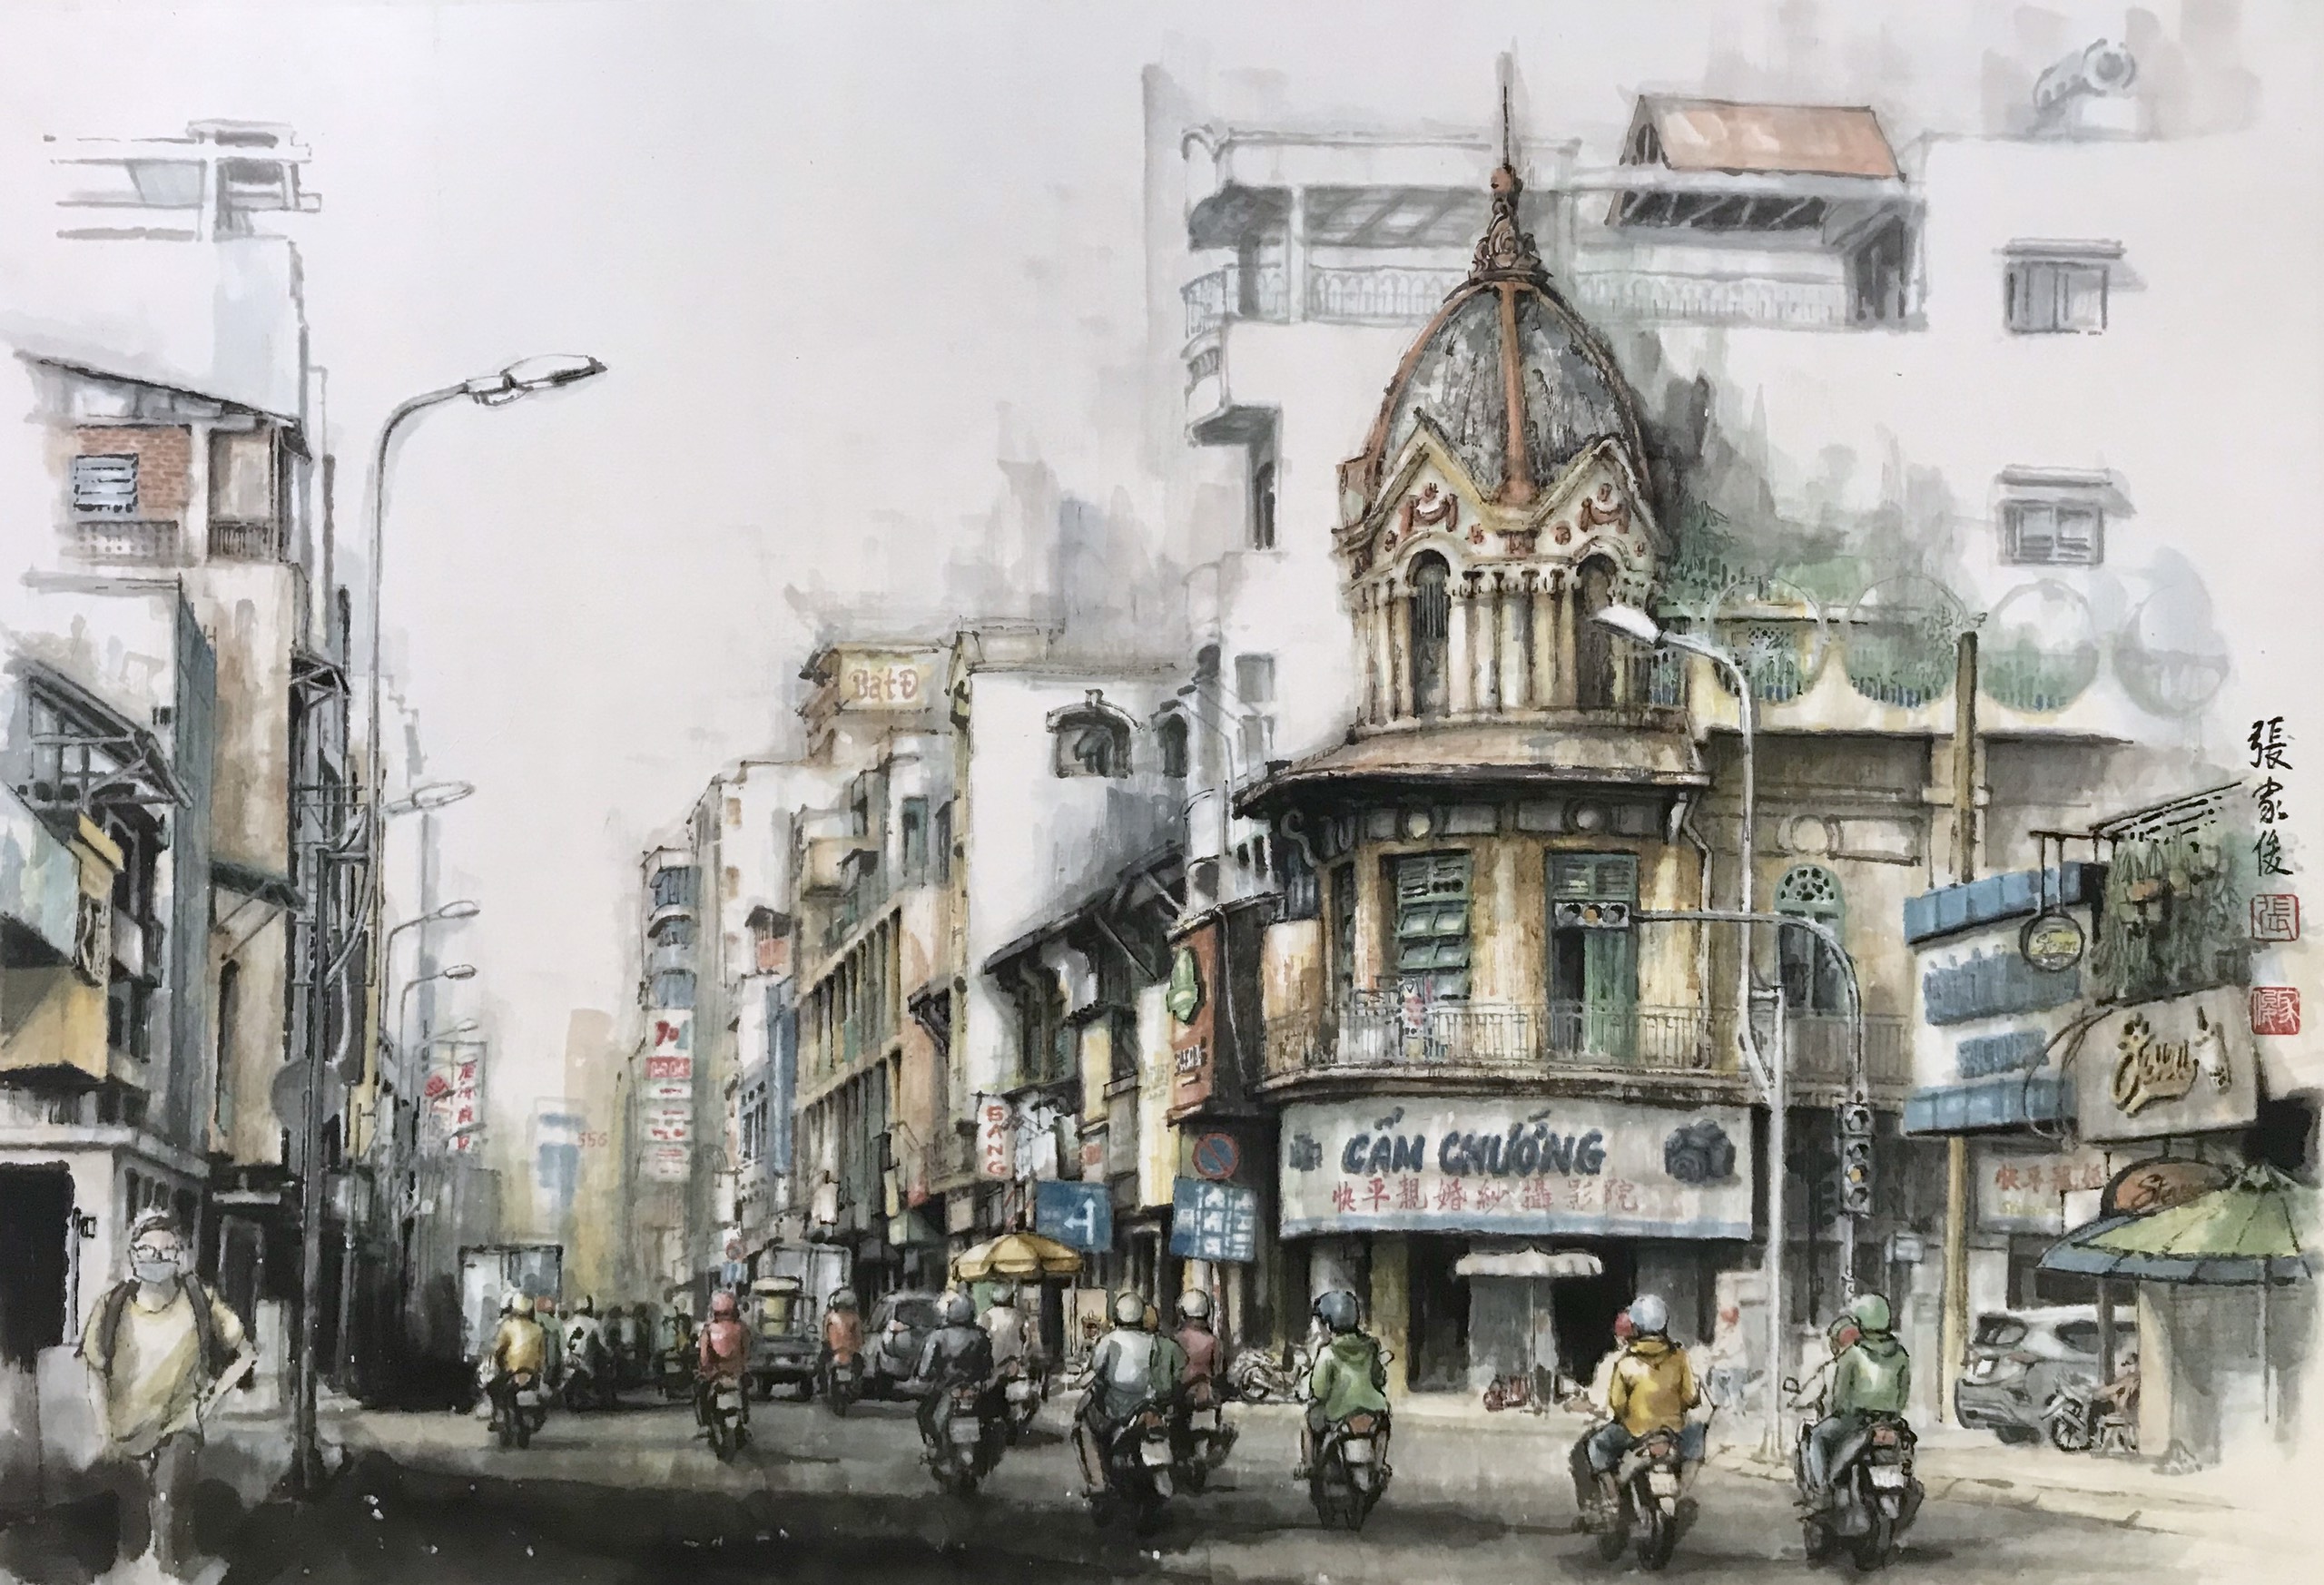 Chợ Lớn là một trong những khu phố đông đúc và sầm uất nhất của Sài Gòn. Với sự pha trộn giữa nét văn hóa Trung Hoa và phương Tây, Chợ Lớn thật sự là một điểm đến thú vị cho những người yêu thích văn hóa và ẩm thực đặc sắc. Hãy xem hình ảnh liên quan đến Chợ Lớn và thưởng thức những nét đẹp của thành phố Sài Gòn.